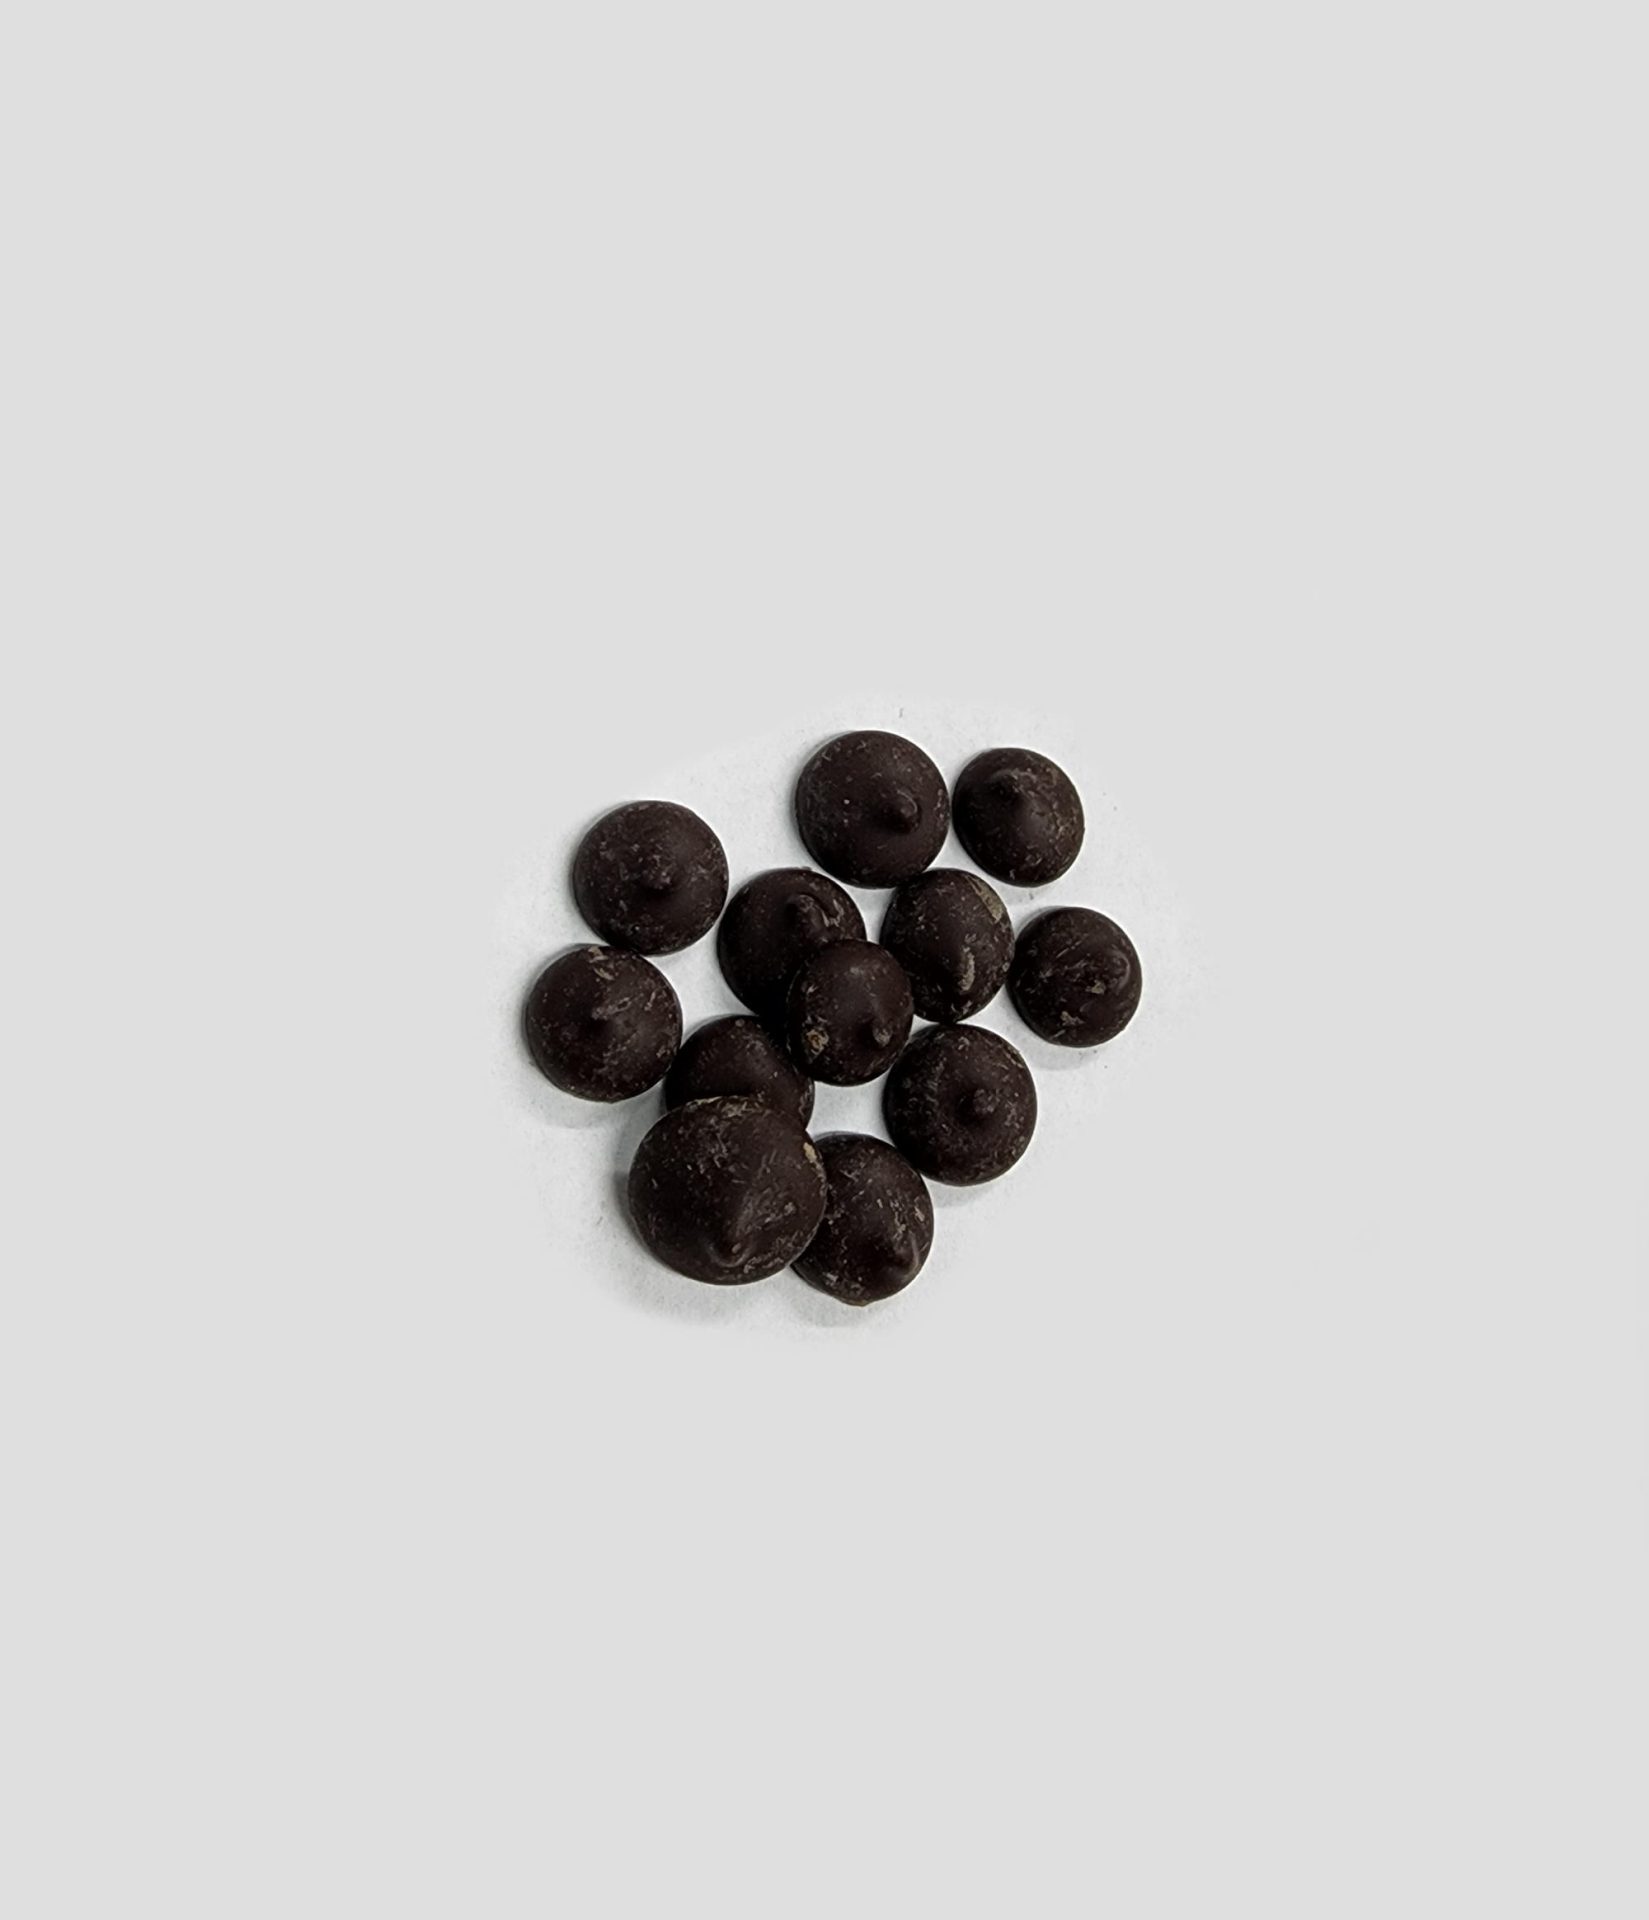 Milk Chocolate 41% Caoba- 1 lb. Bag of Discos